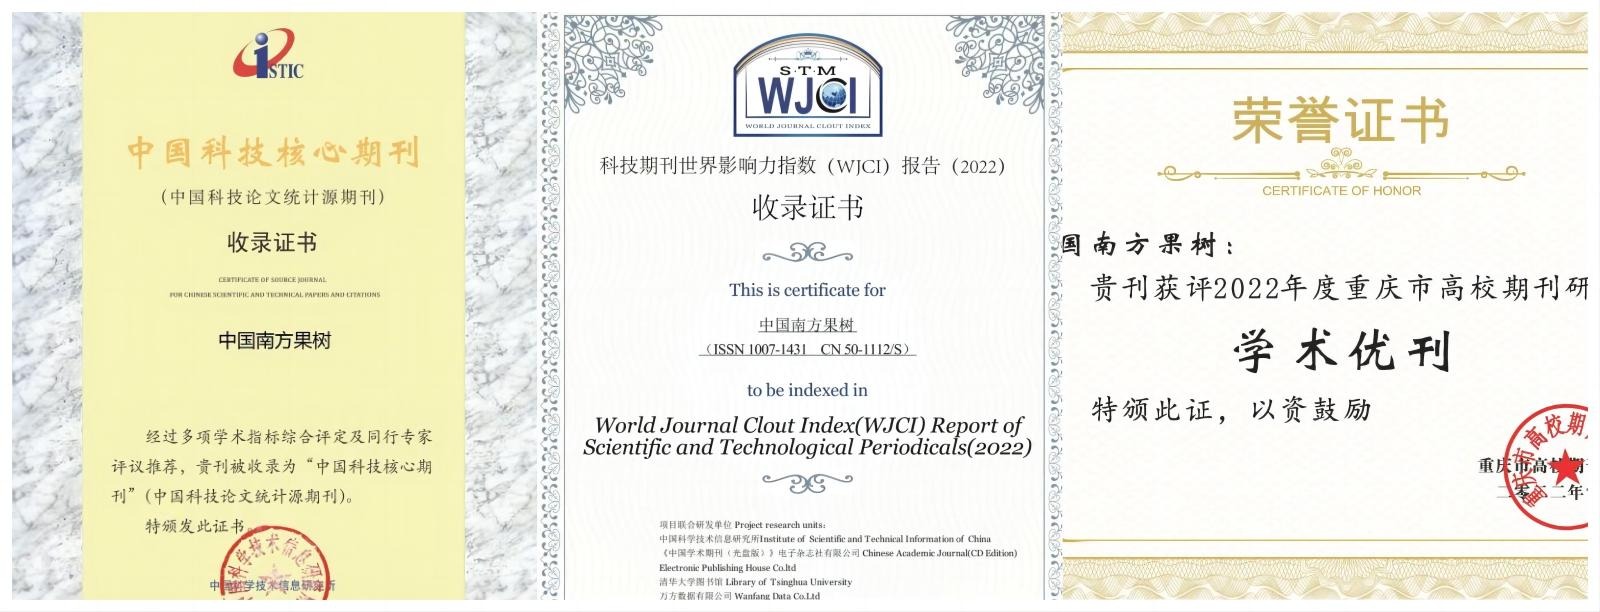 《中国南方果树》被“中国科技核心期刊”和《WJCI报告》收录